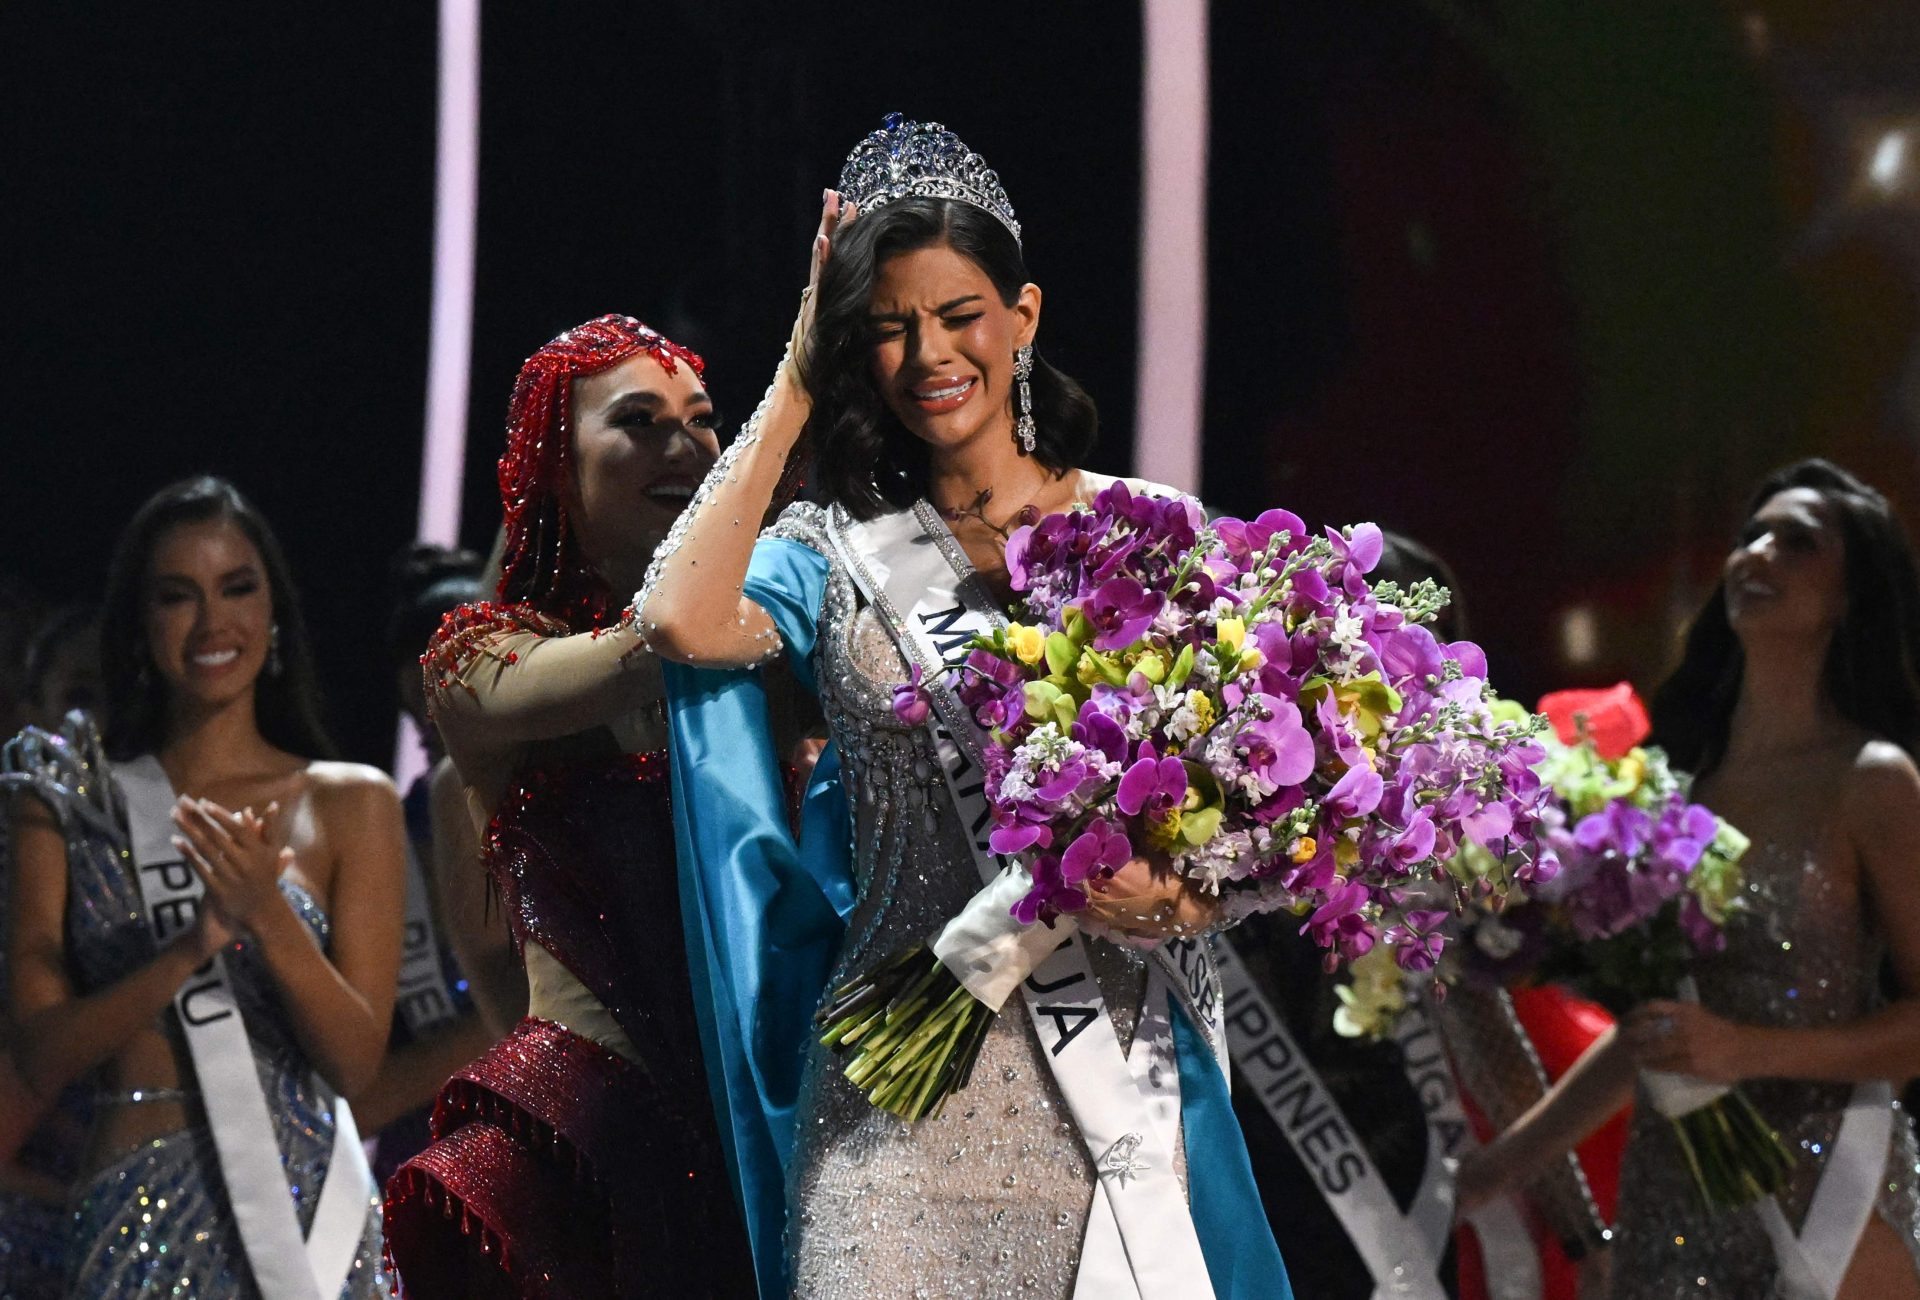 Concorrente da Nicarágua foi eleita Miss Universo 2023